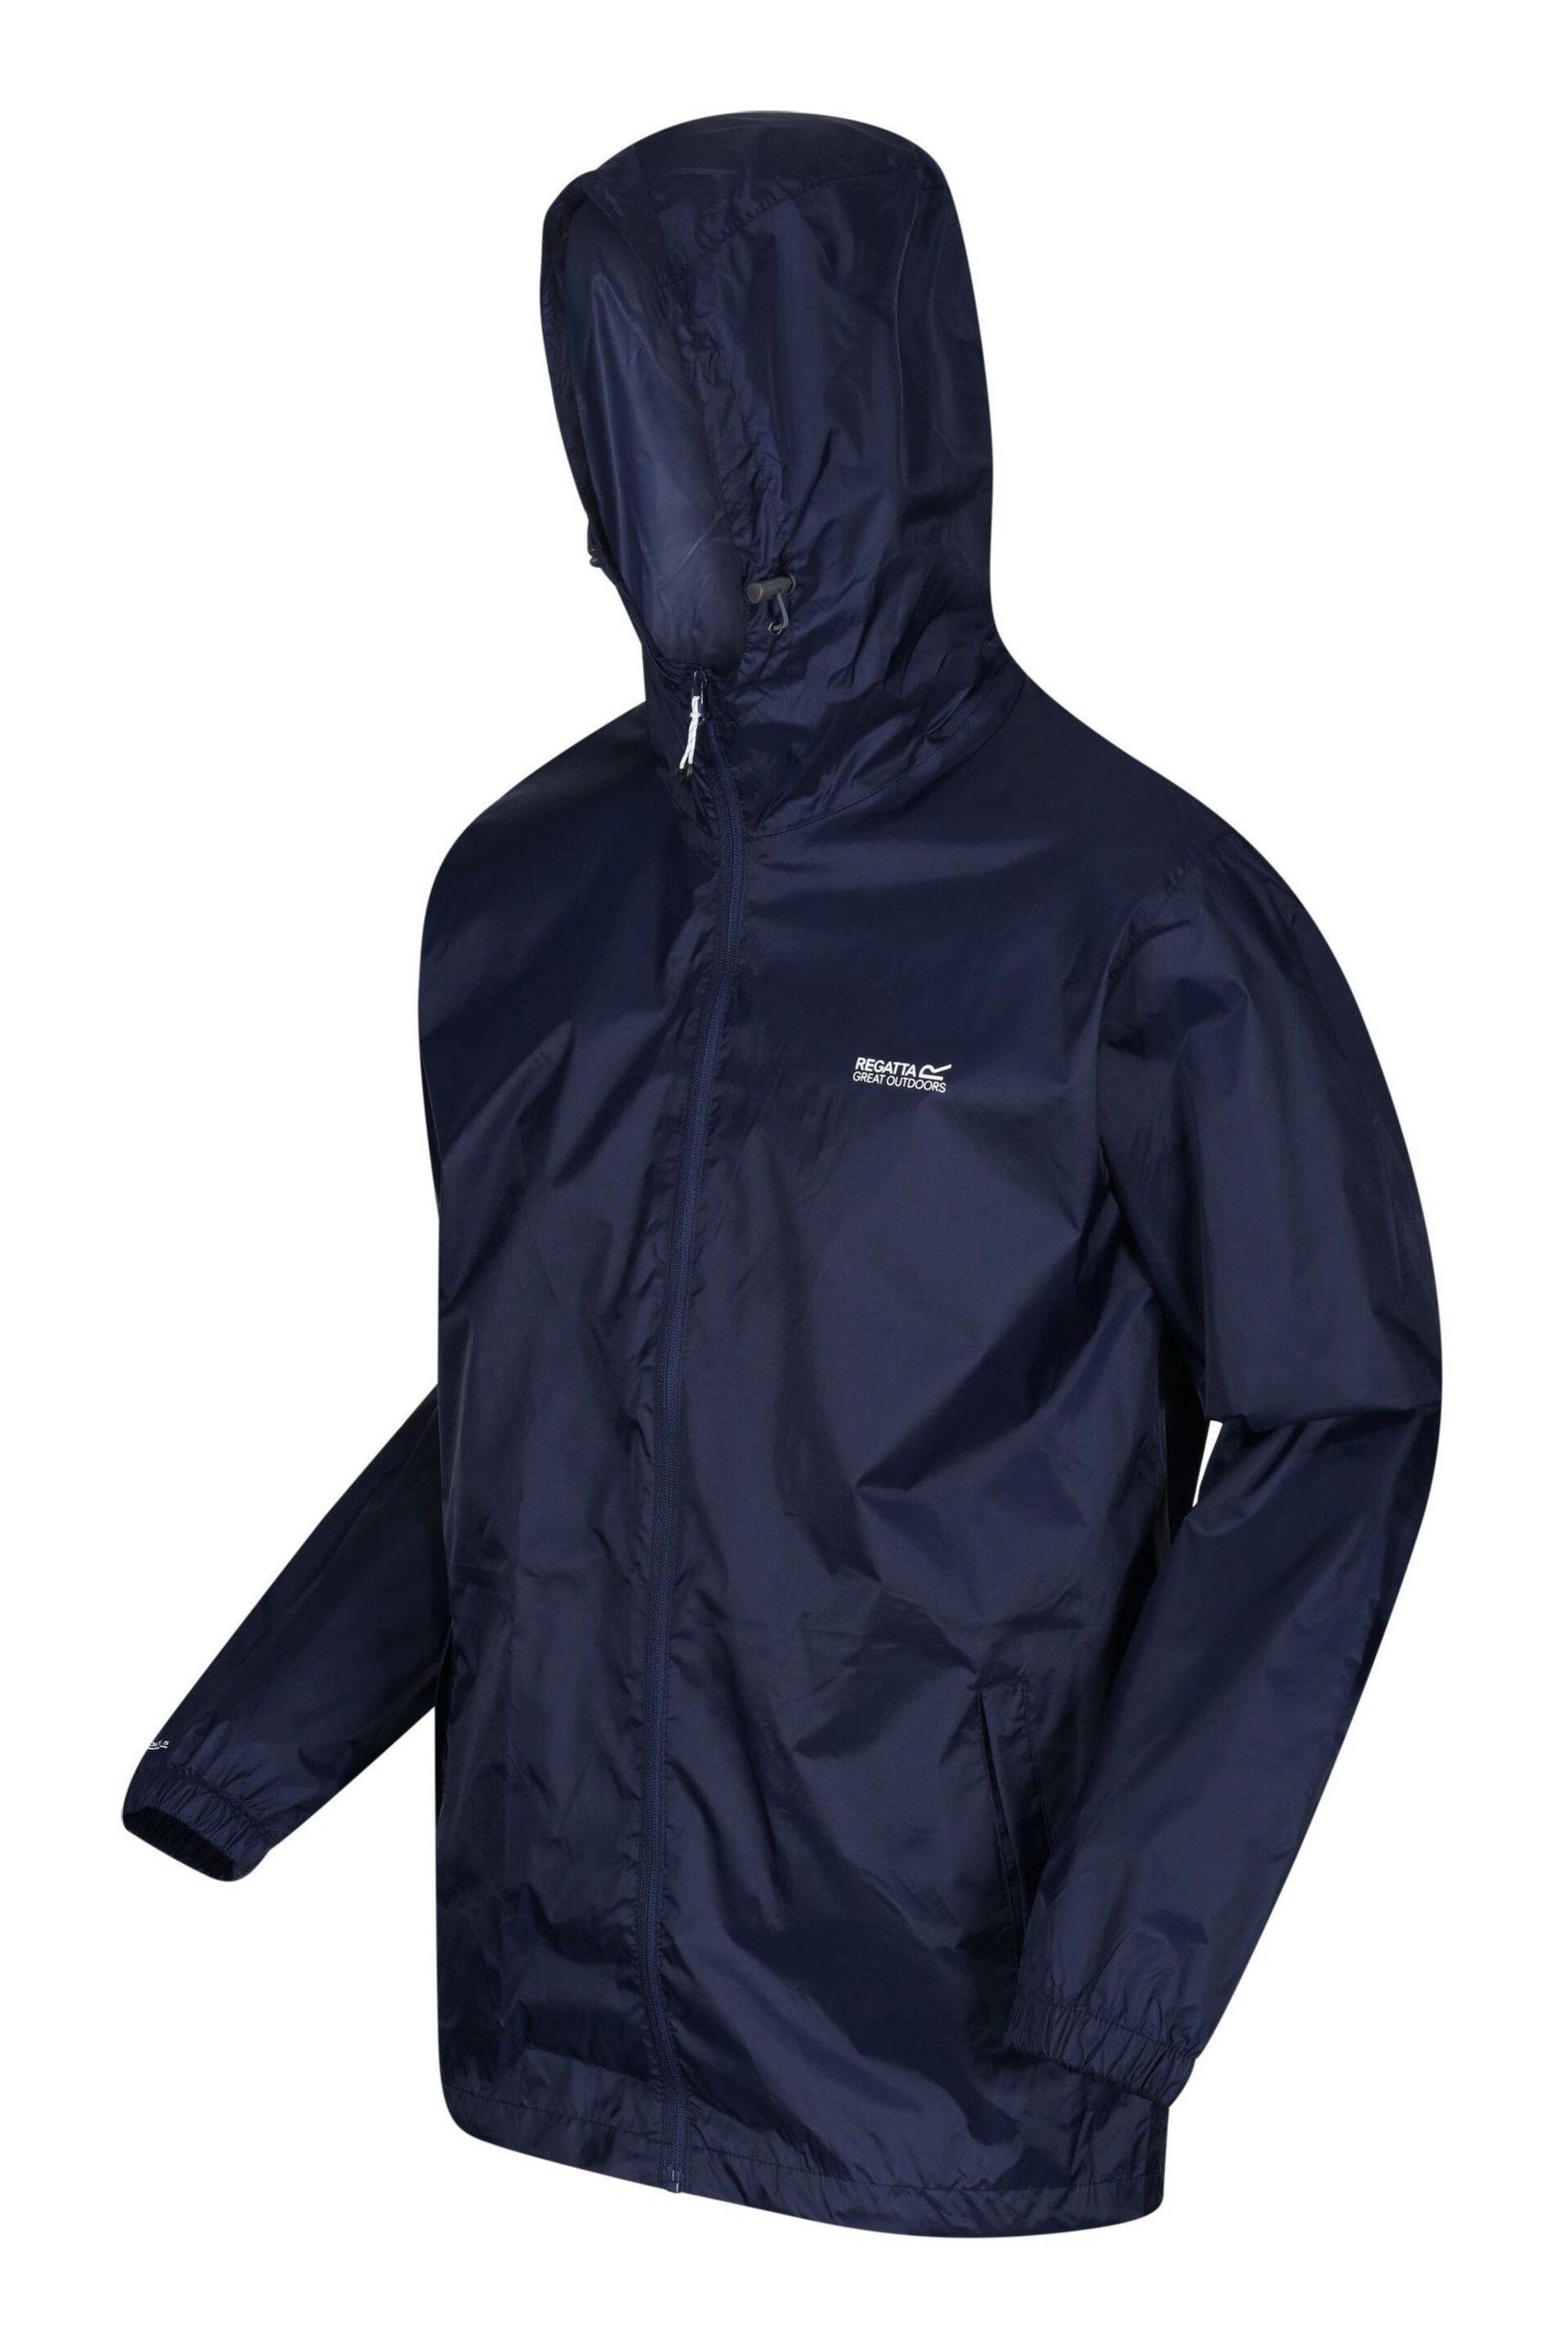 Regatta Navy Mens Waterproof Pack It Jacket - Image 9 of 9